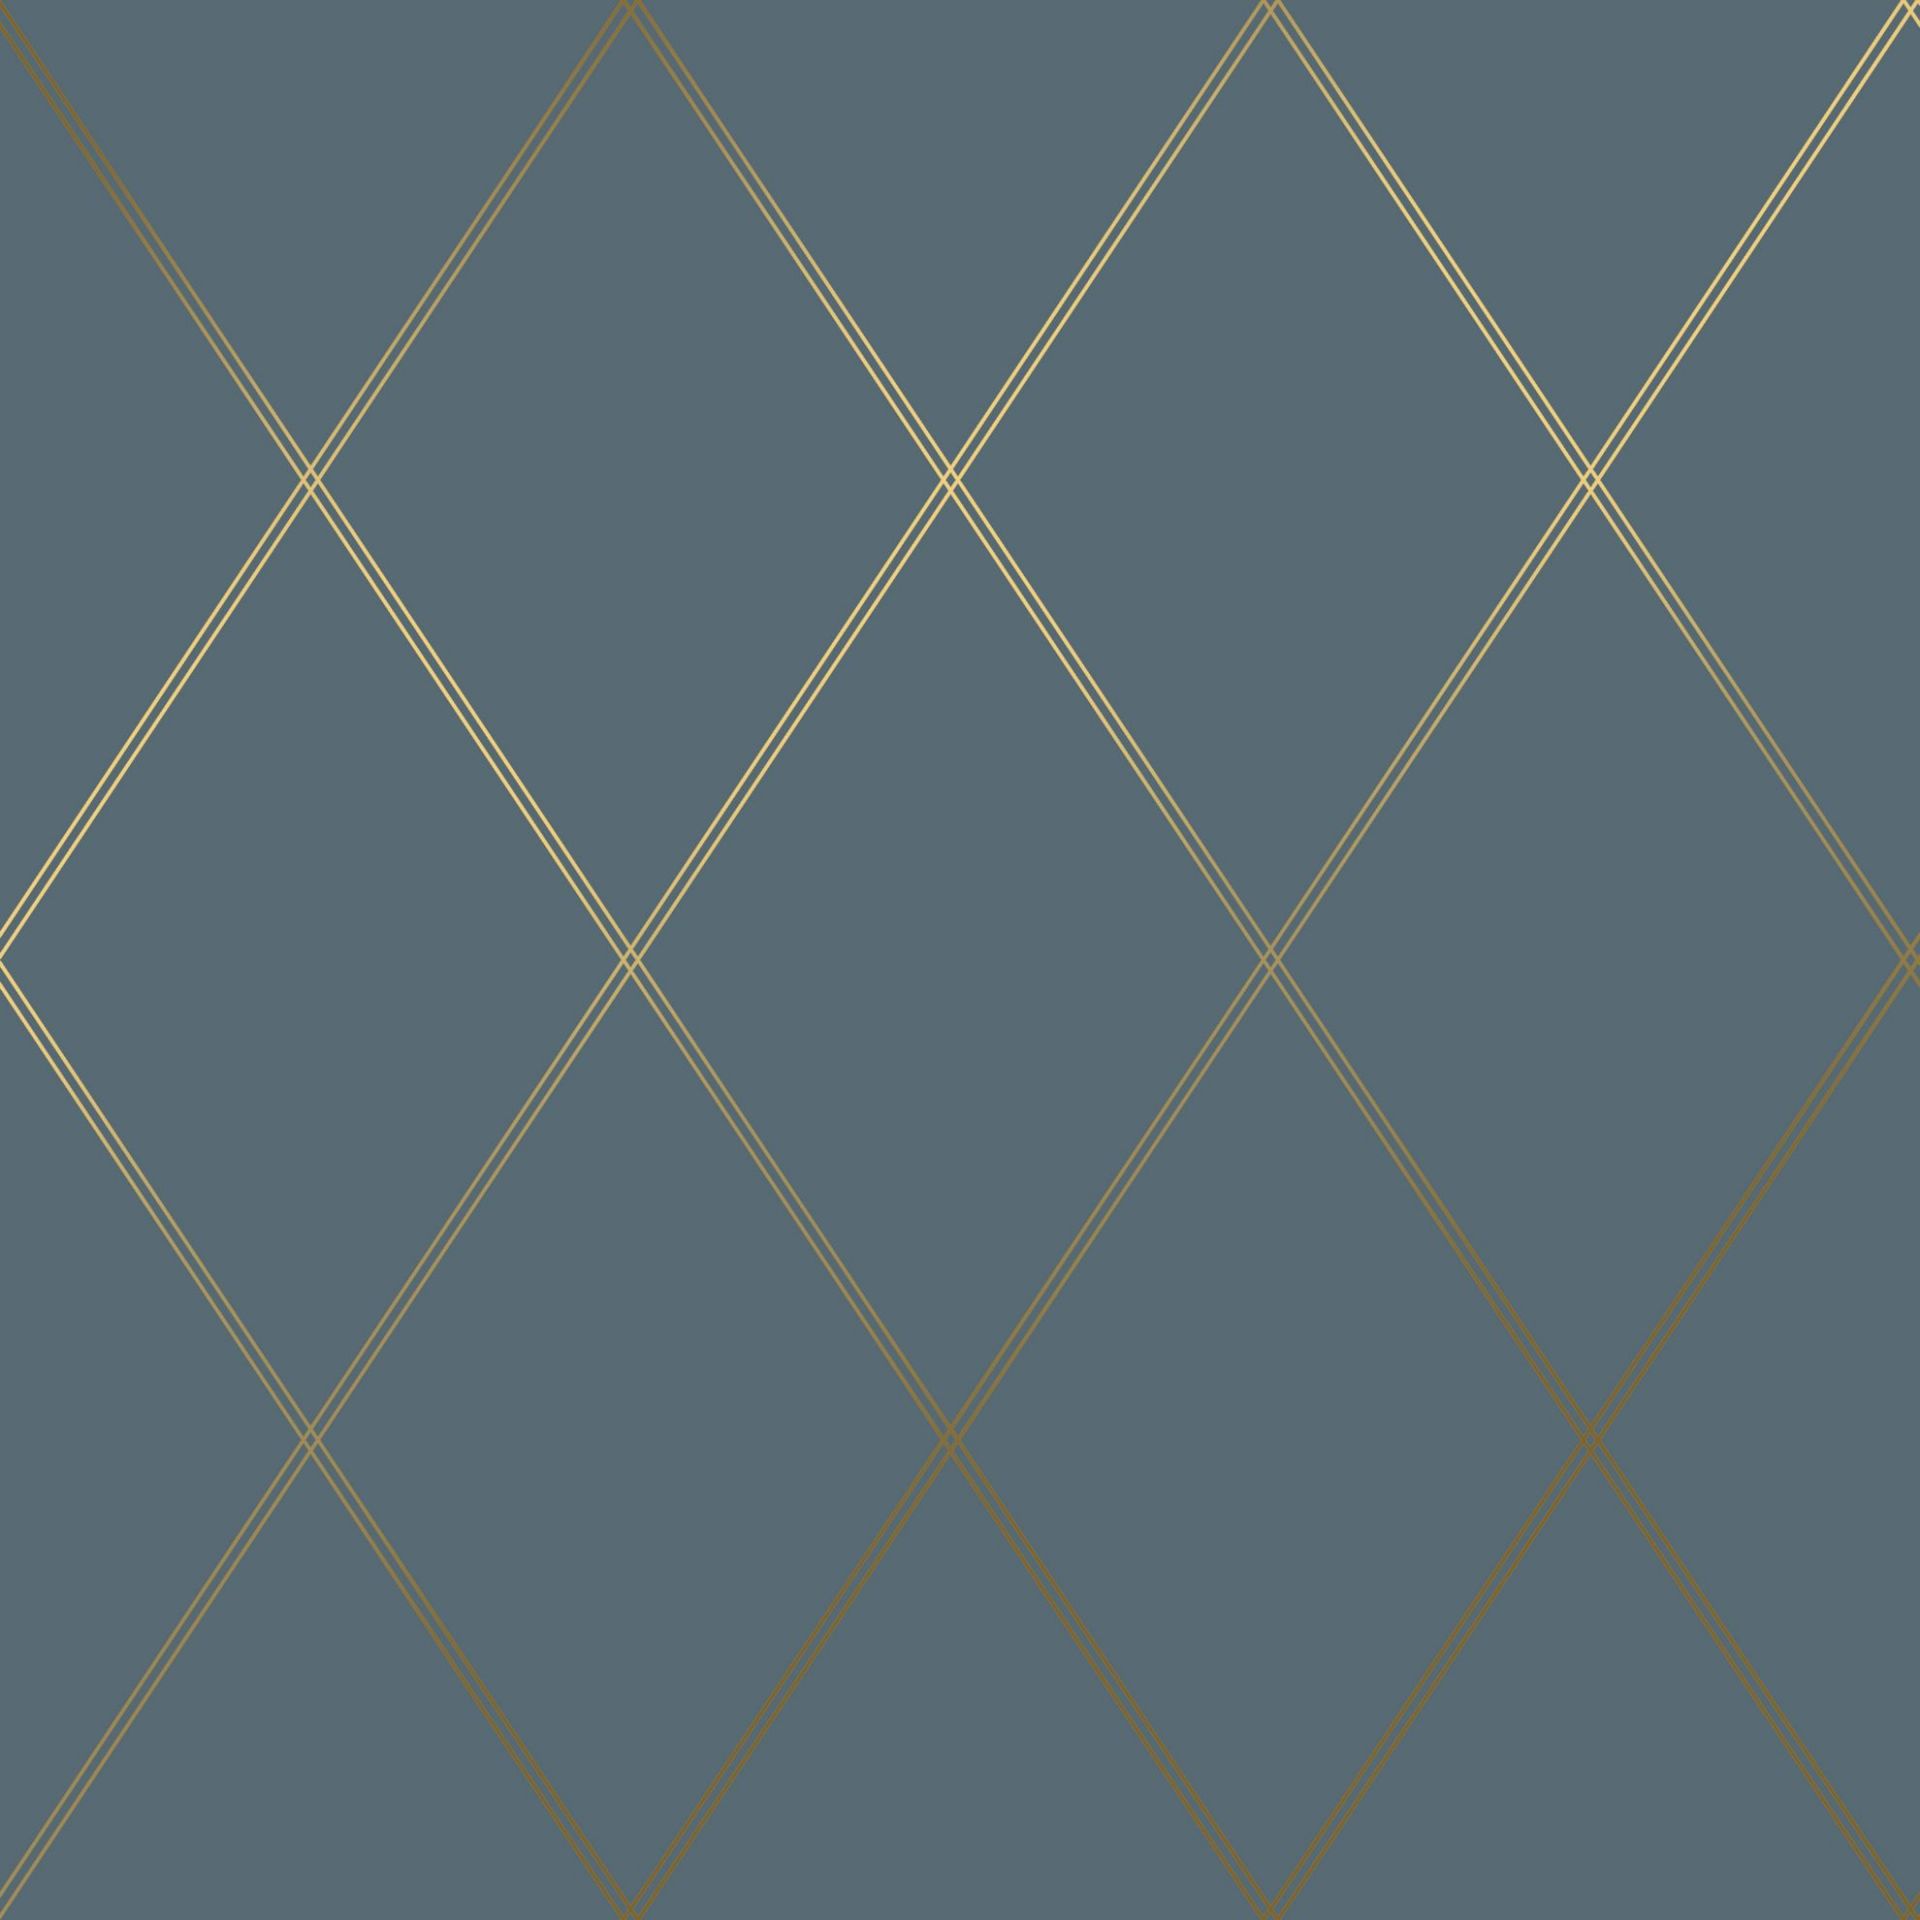 Nærbilde av tapeten Lycke Romb 1. Stilren tapet med rombmønster med gyldne linjer mot en dempet mørkeblå bakgrunn.